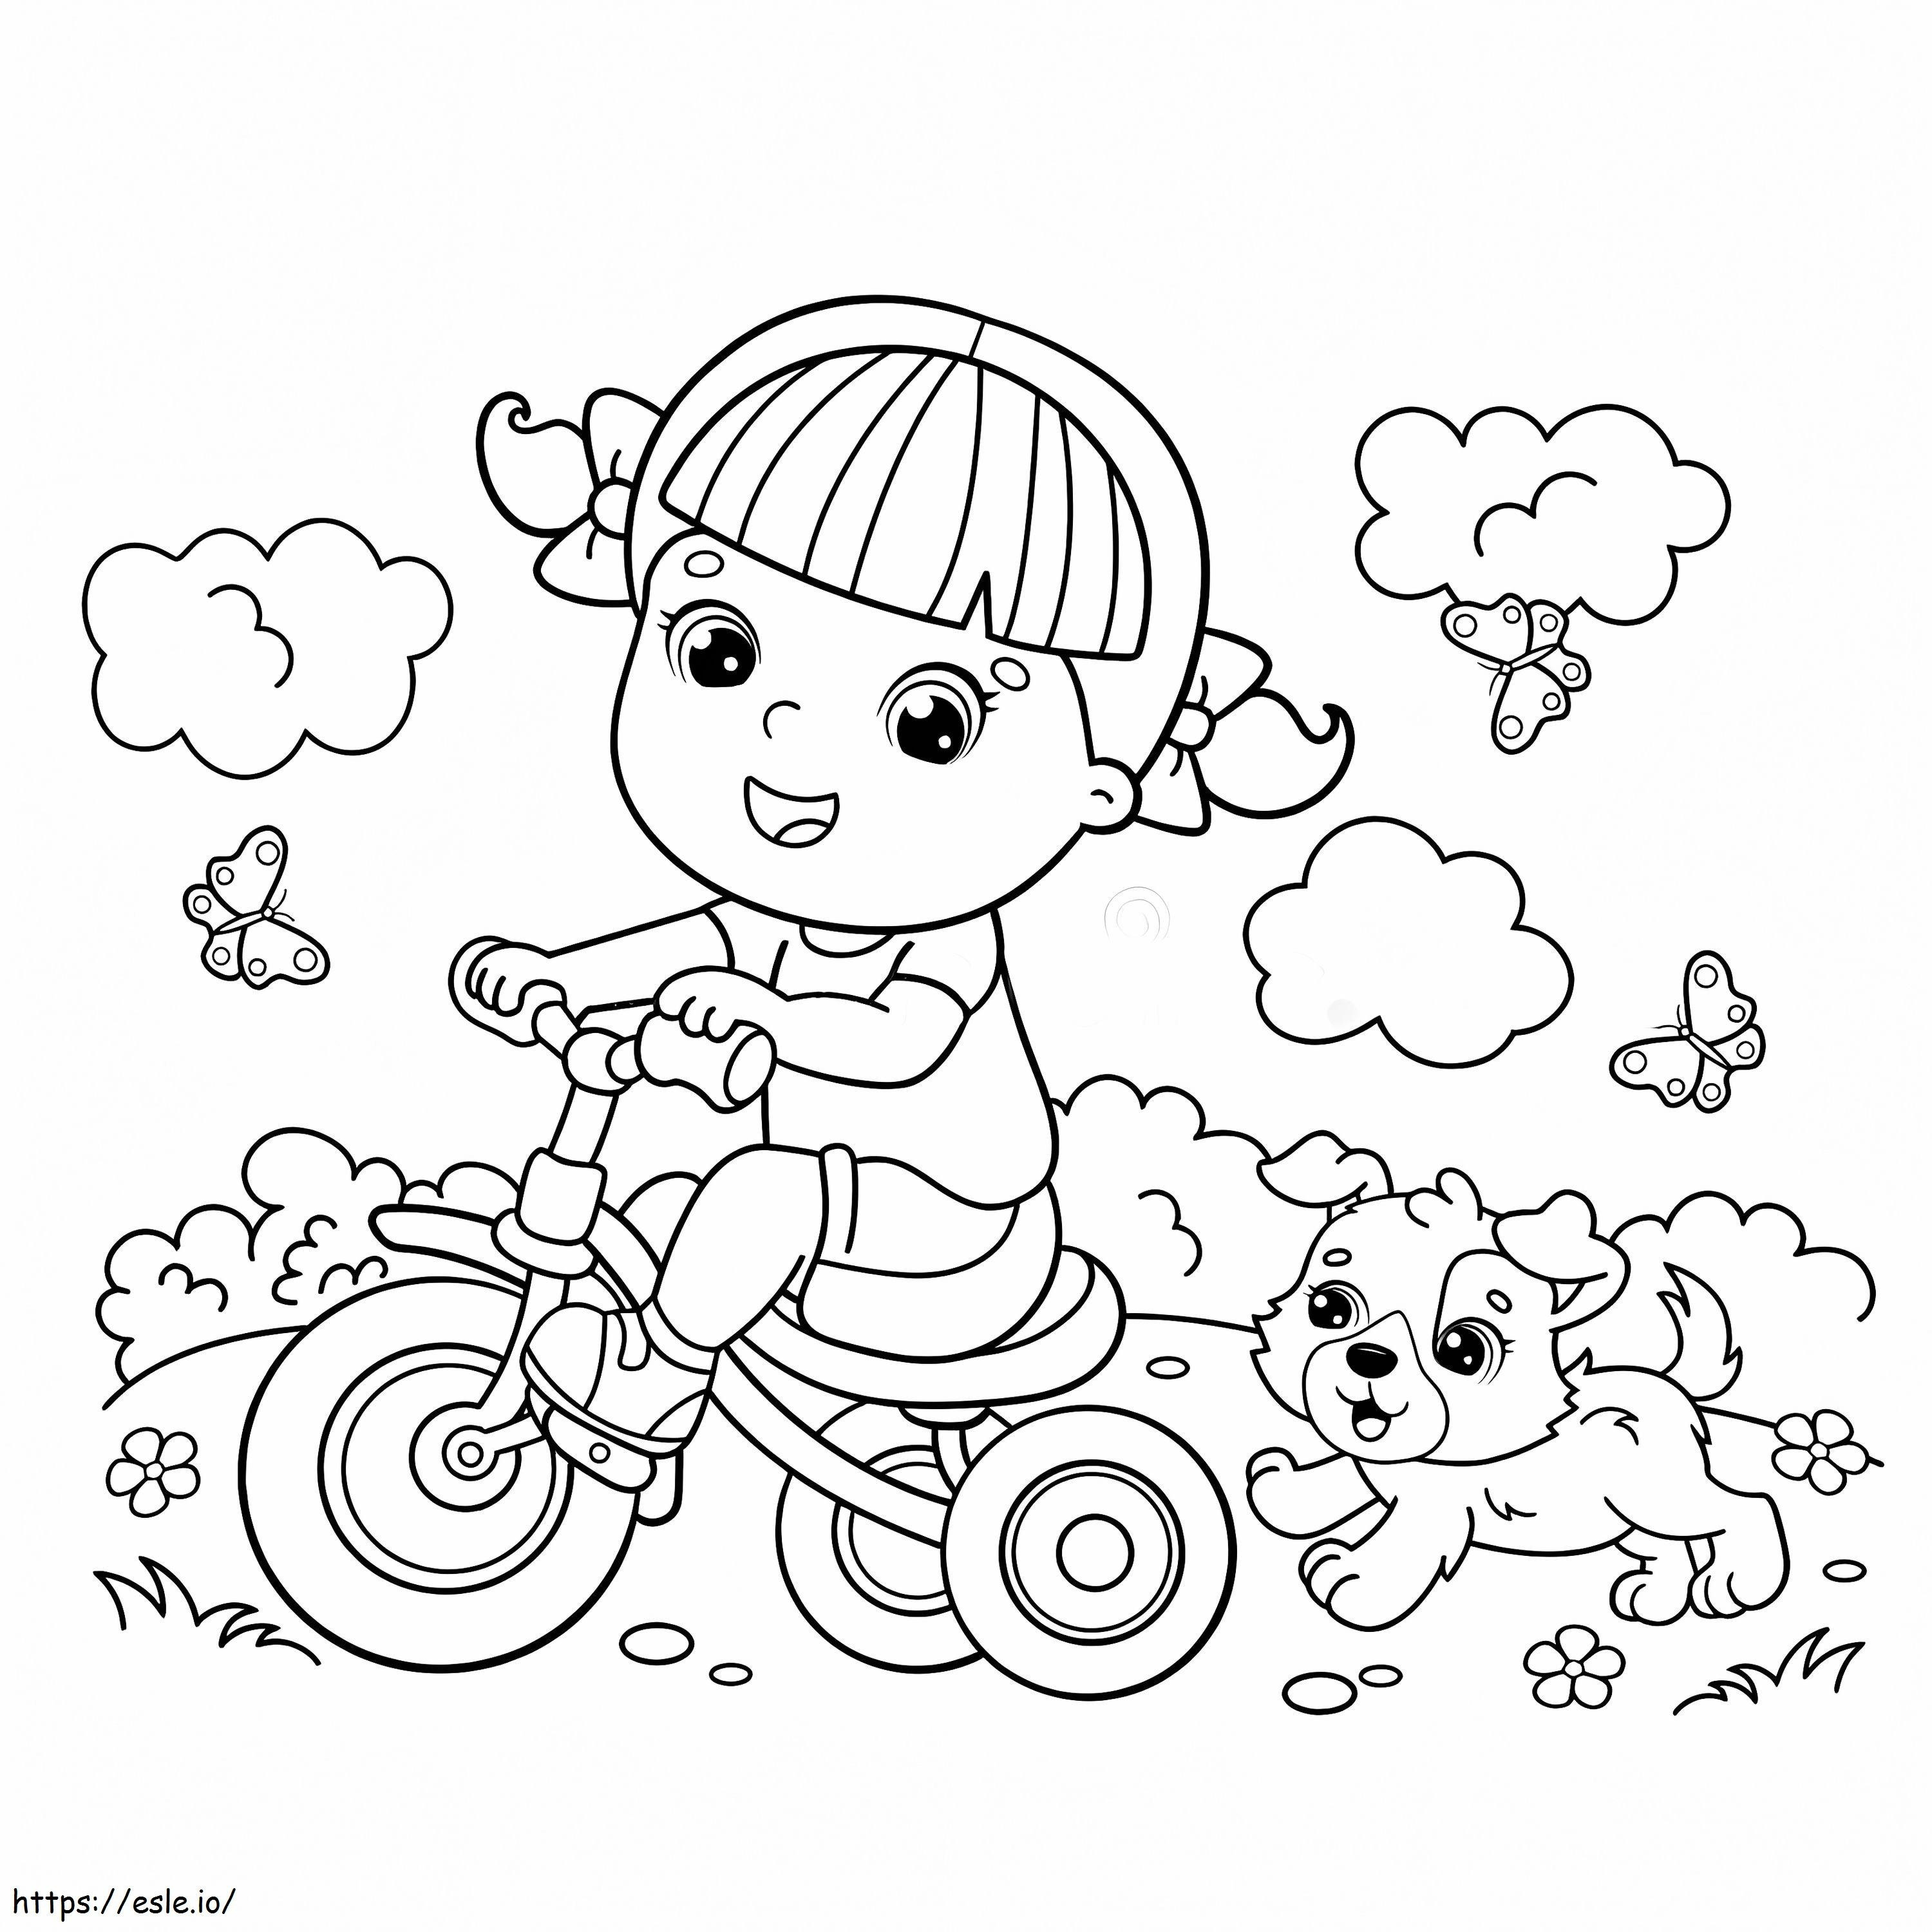 Dziewczyna Na Rowerze I Pies kolorowanka